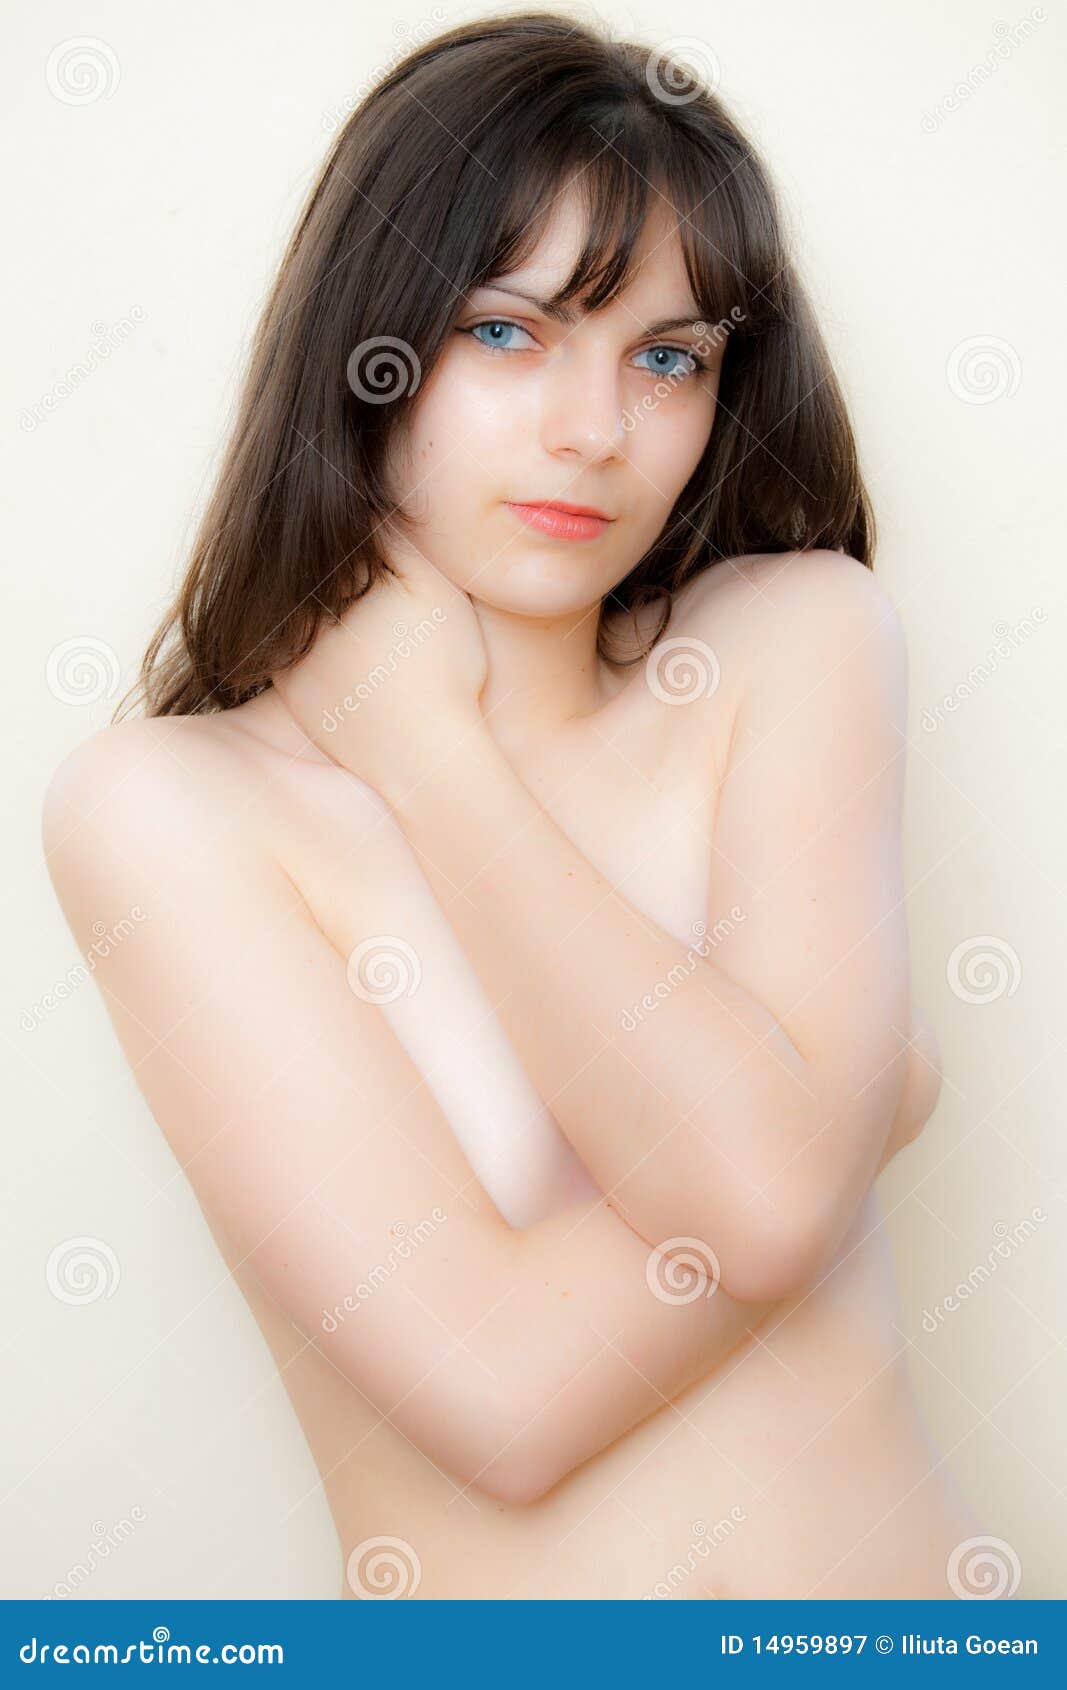 Nude Beautiful Women